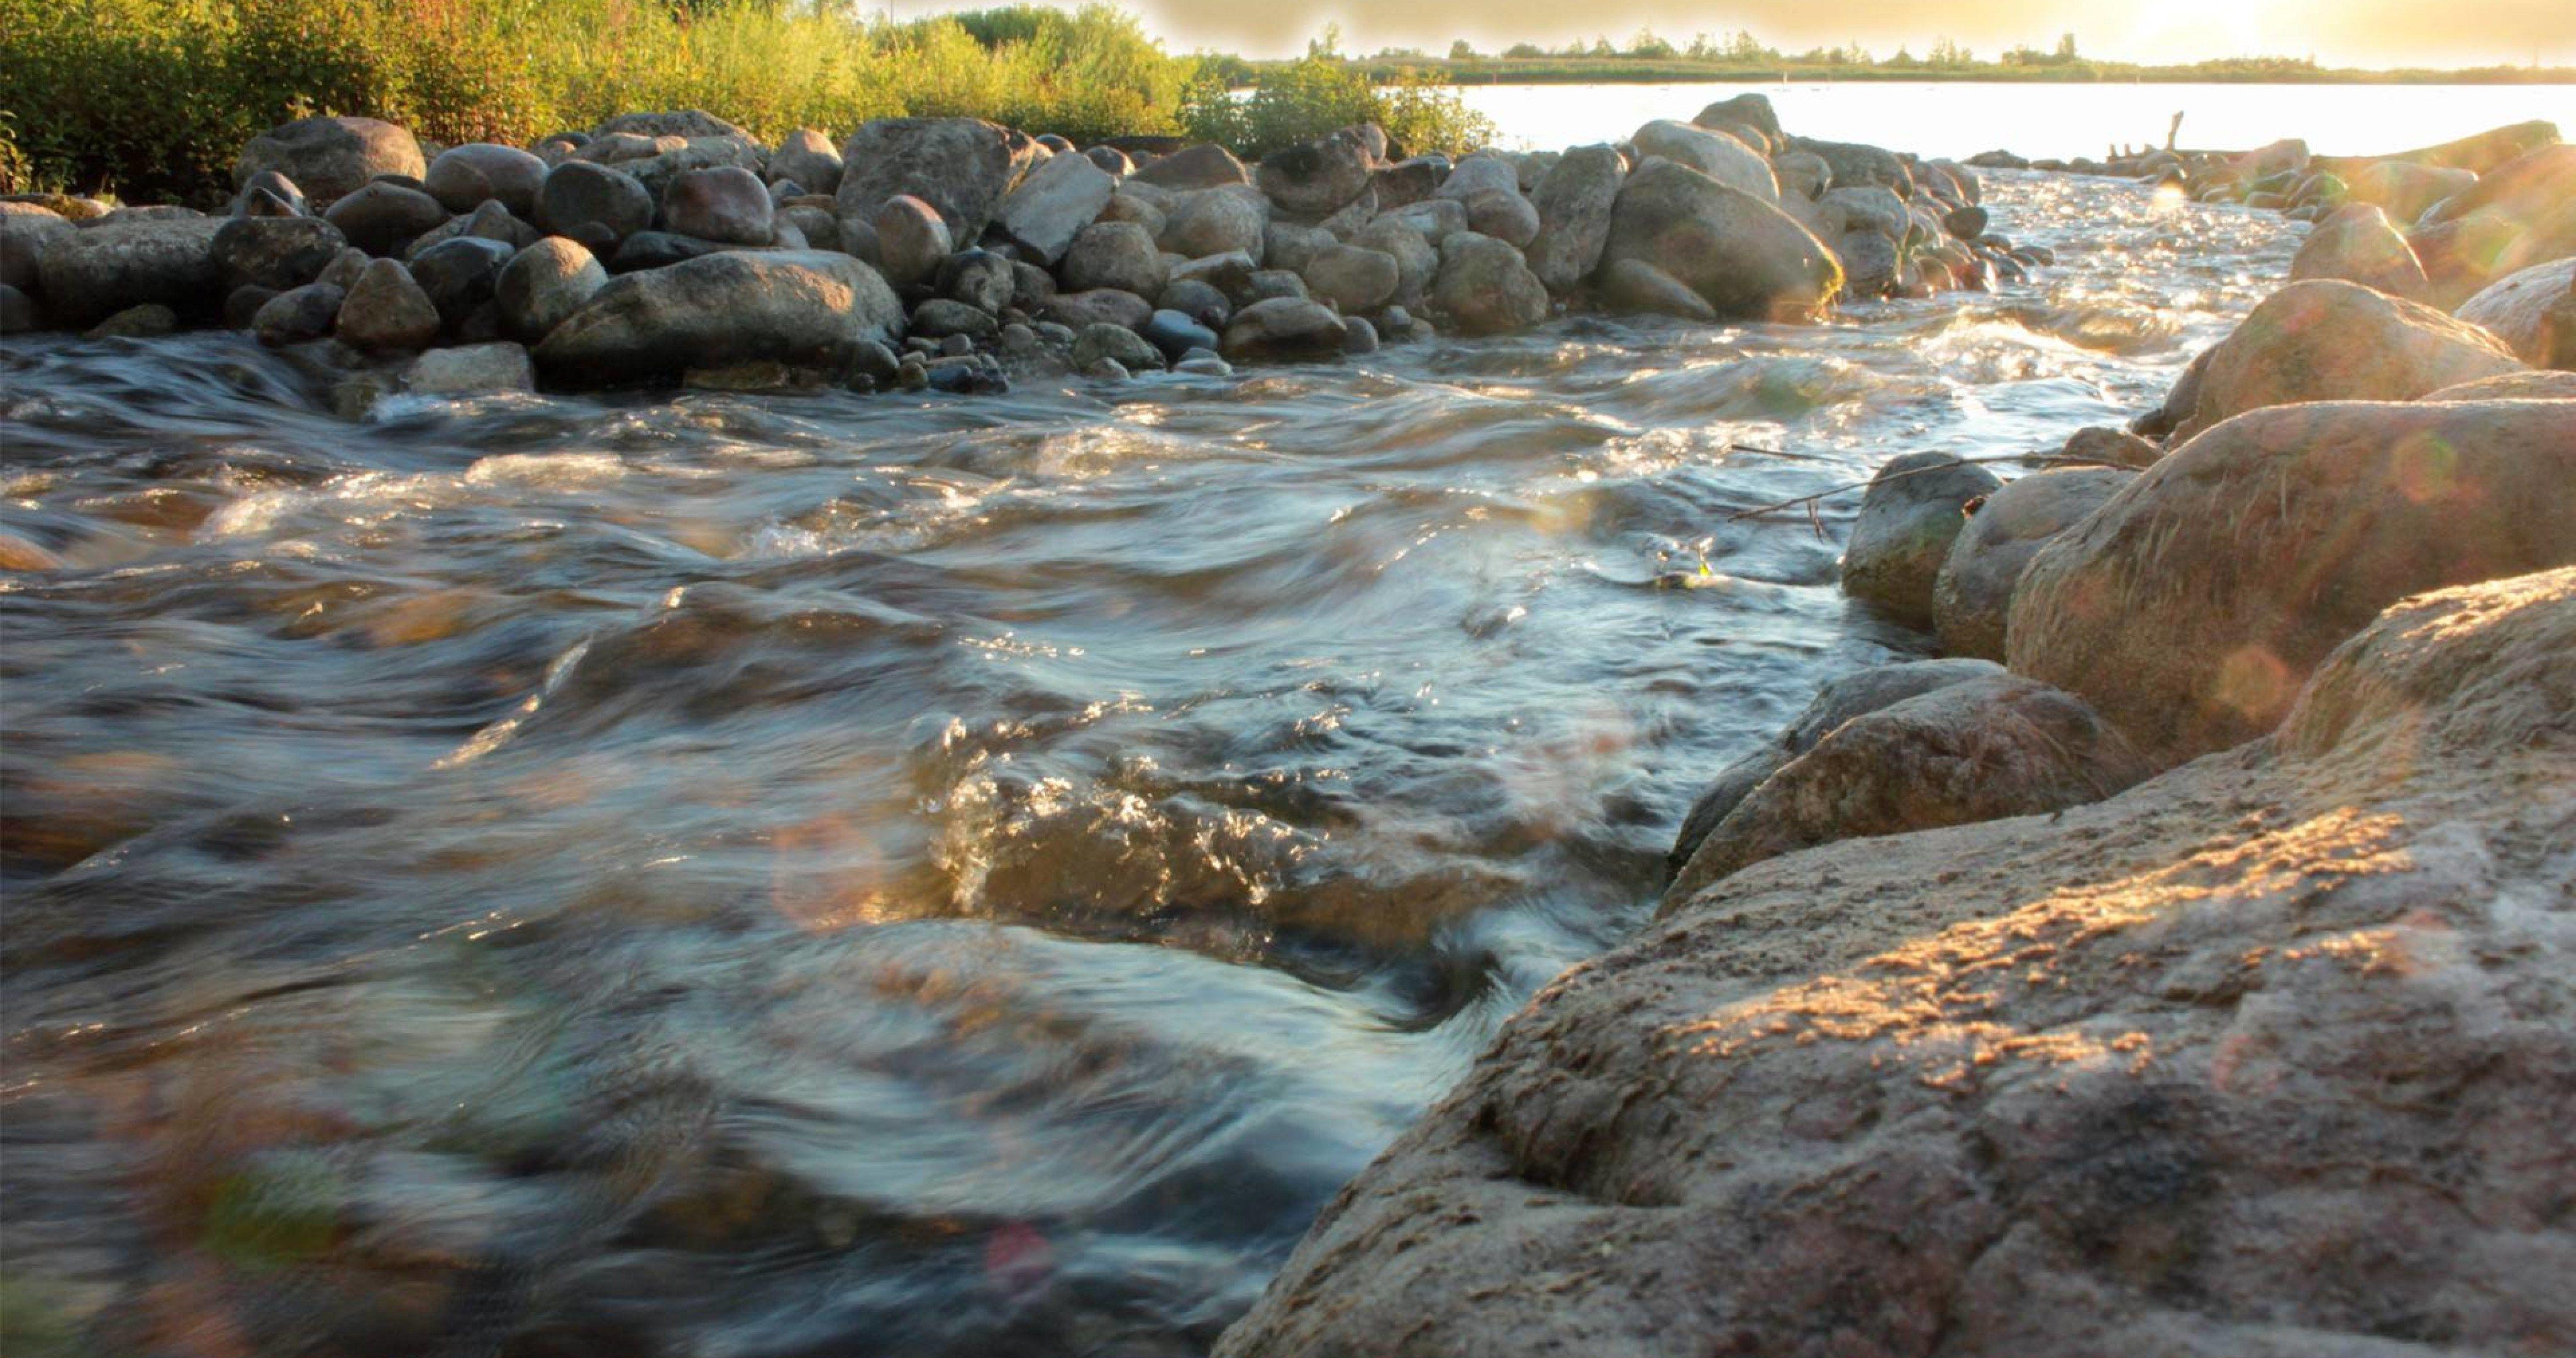 Река протекает через озеро. Вода река. Ручей с камнями. Каменистый берег реки. Камни в реке.